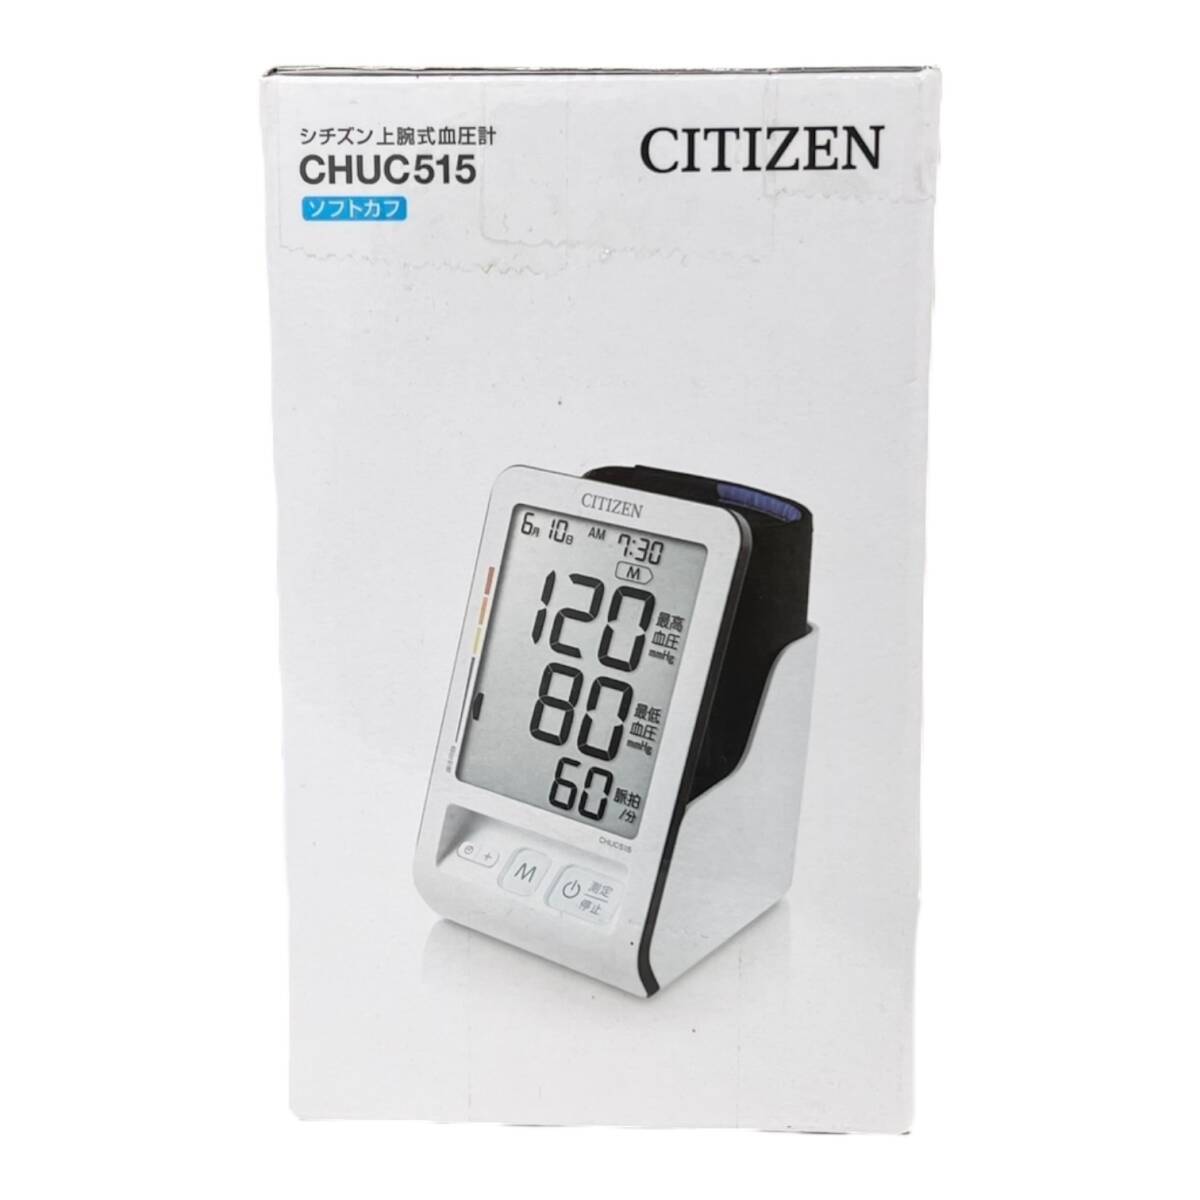 【未開封】CITIZEN シチズン CHUC515 上腕式血圧計 _画像2